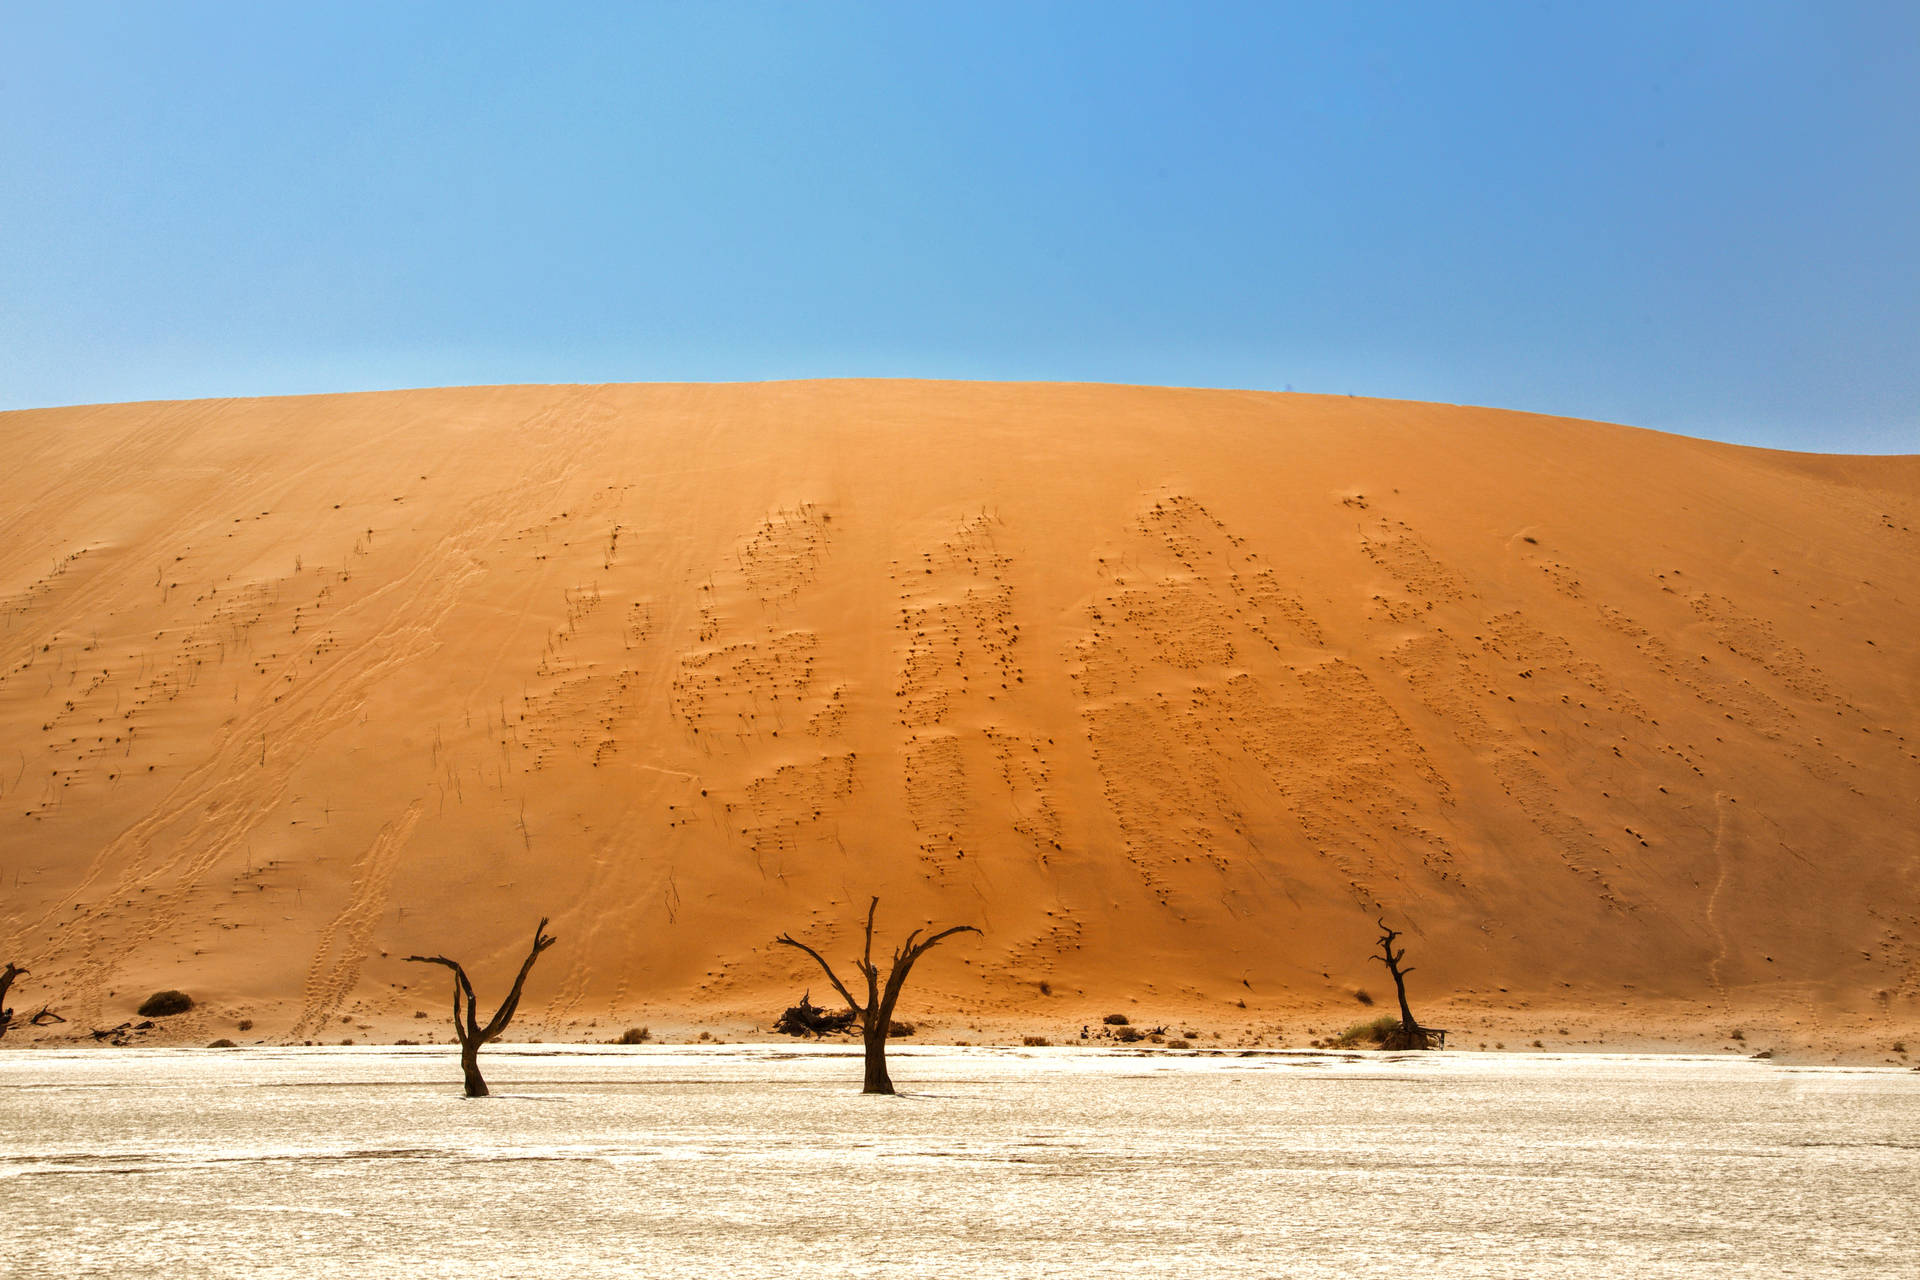 Namibia Grassy Sand Dunes Background